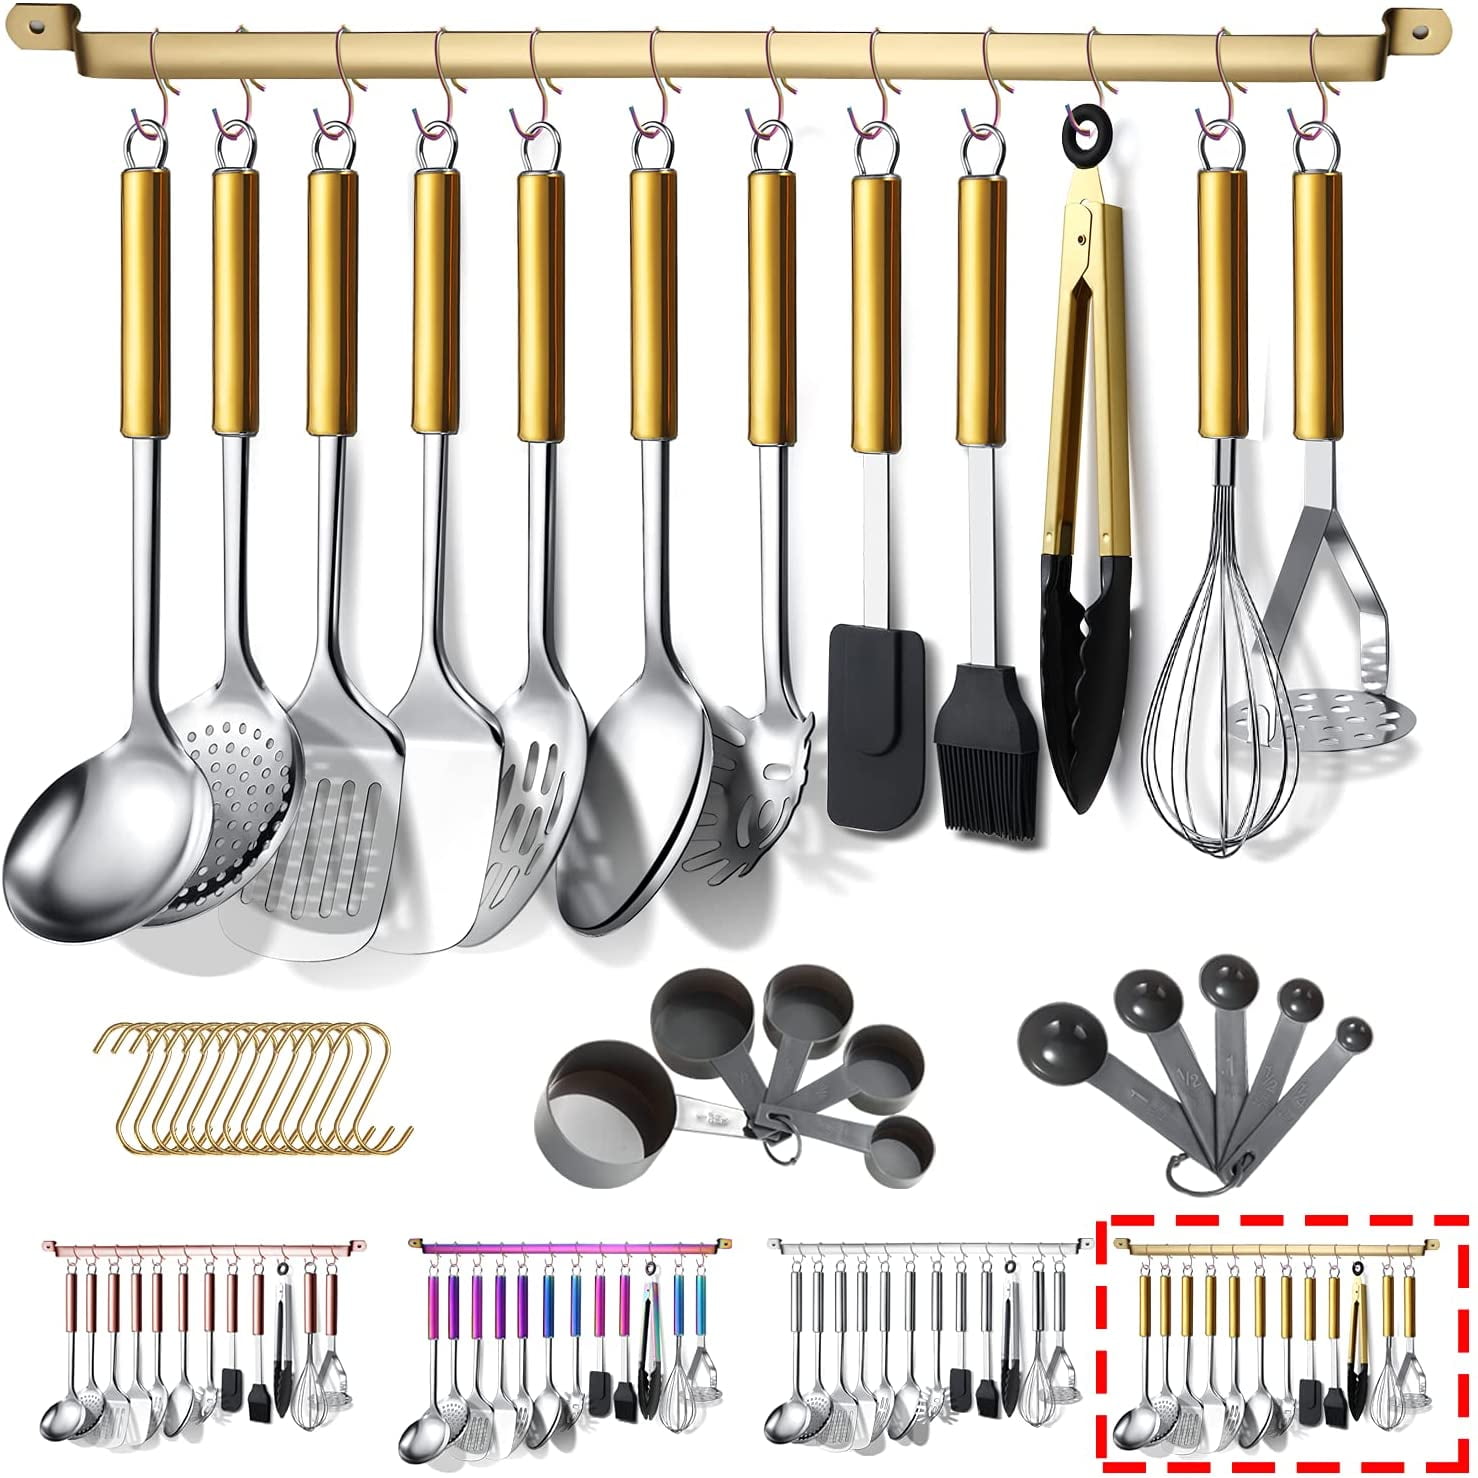  Berglander Juego de utensilios de cocina de 38 piezas